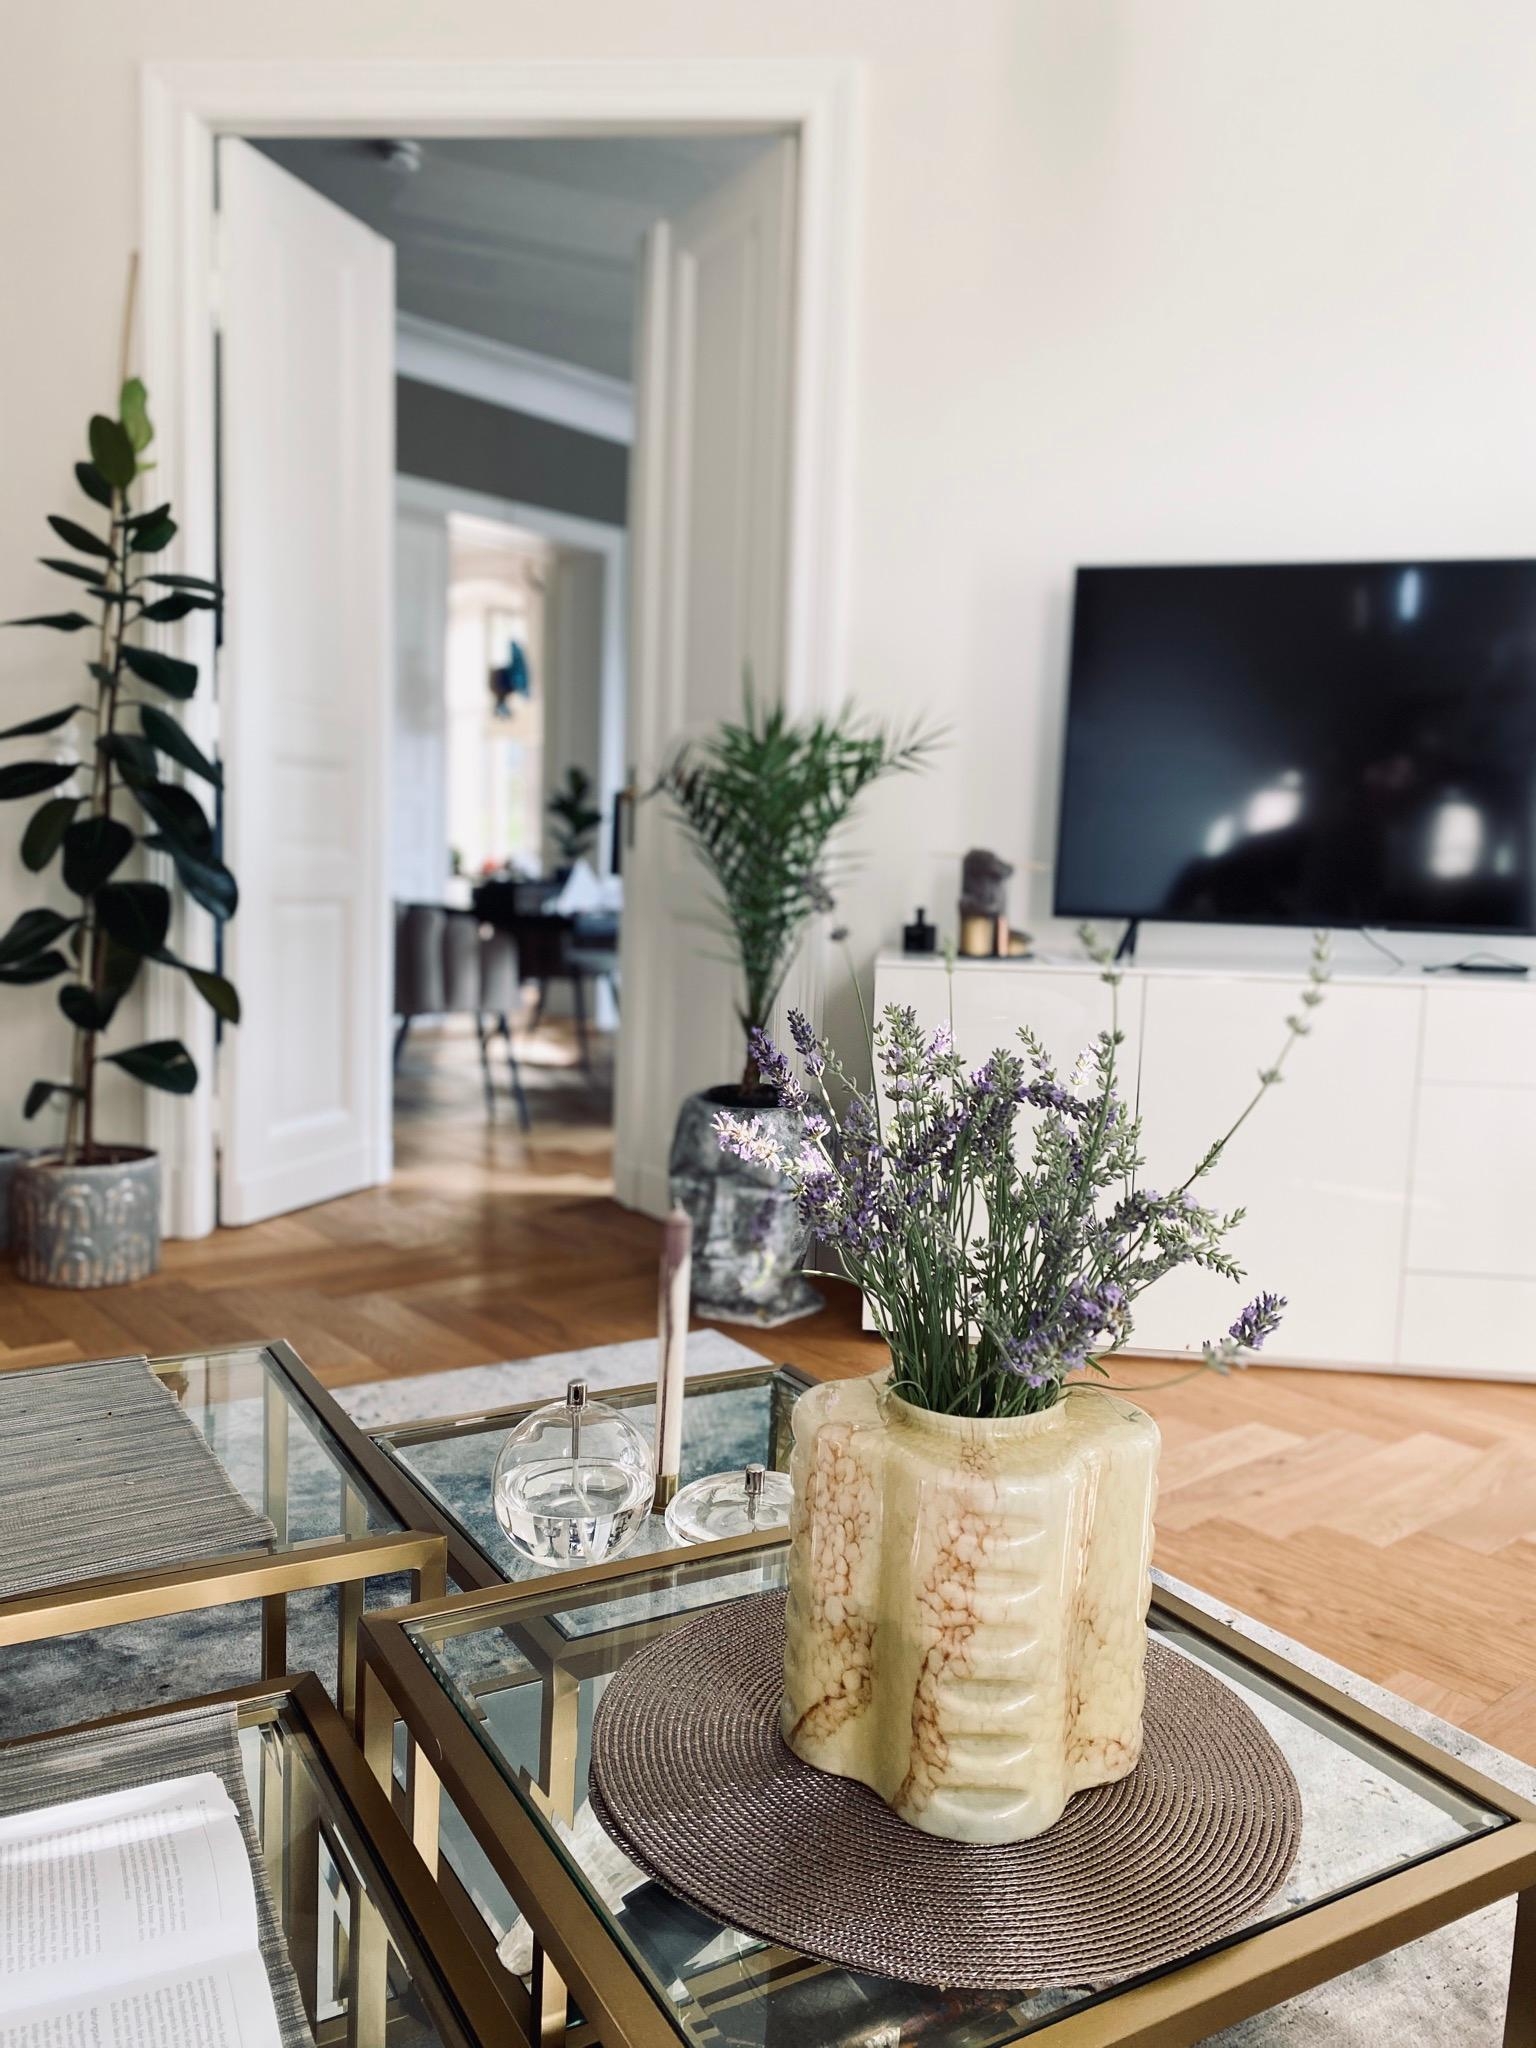 💜🤍 #lavendel #love #wohnzimmer #altbau #interior #blumen